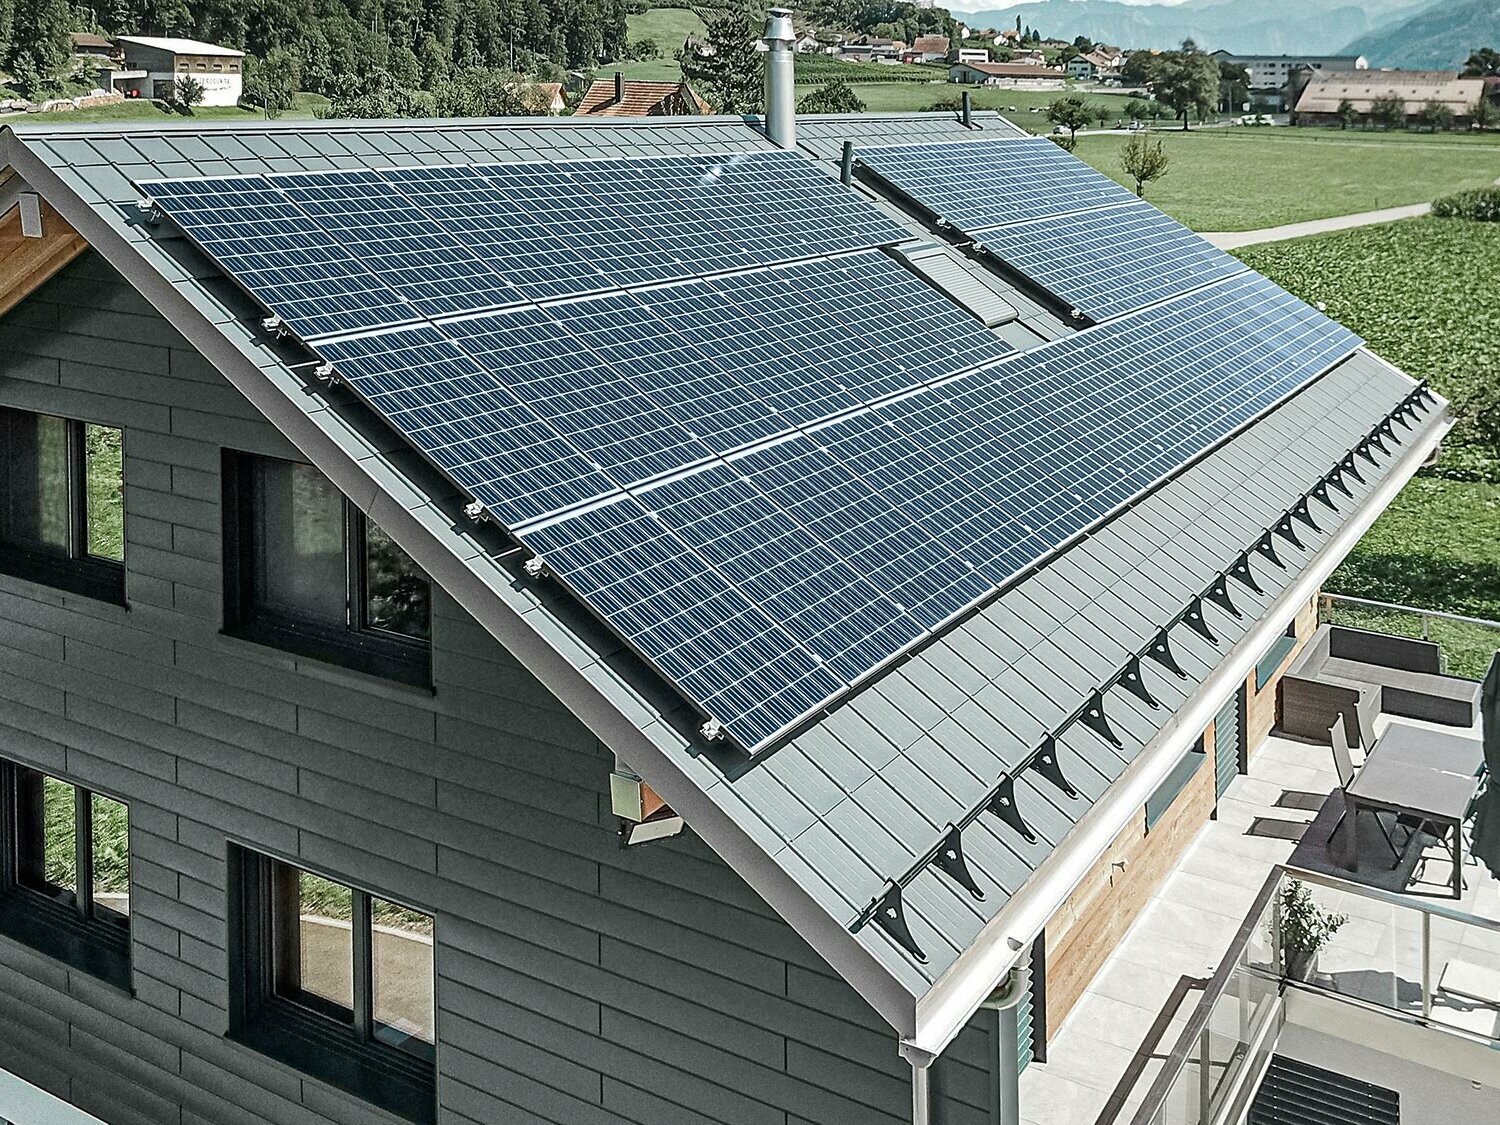 Impianto fotovoltaico montato su tetto PREFA con staffe e binario per una tenuta sicura.